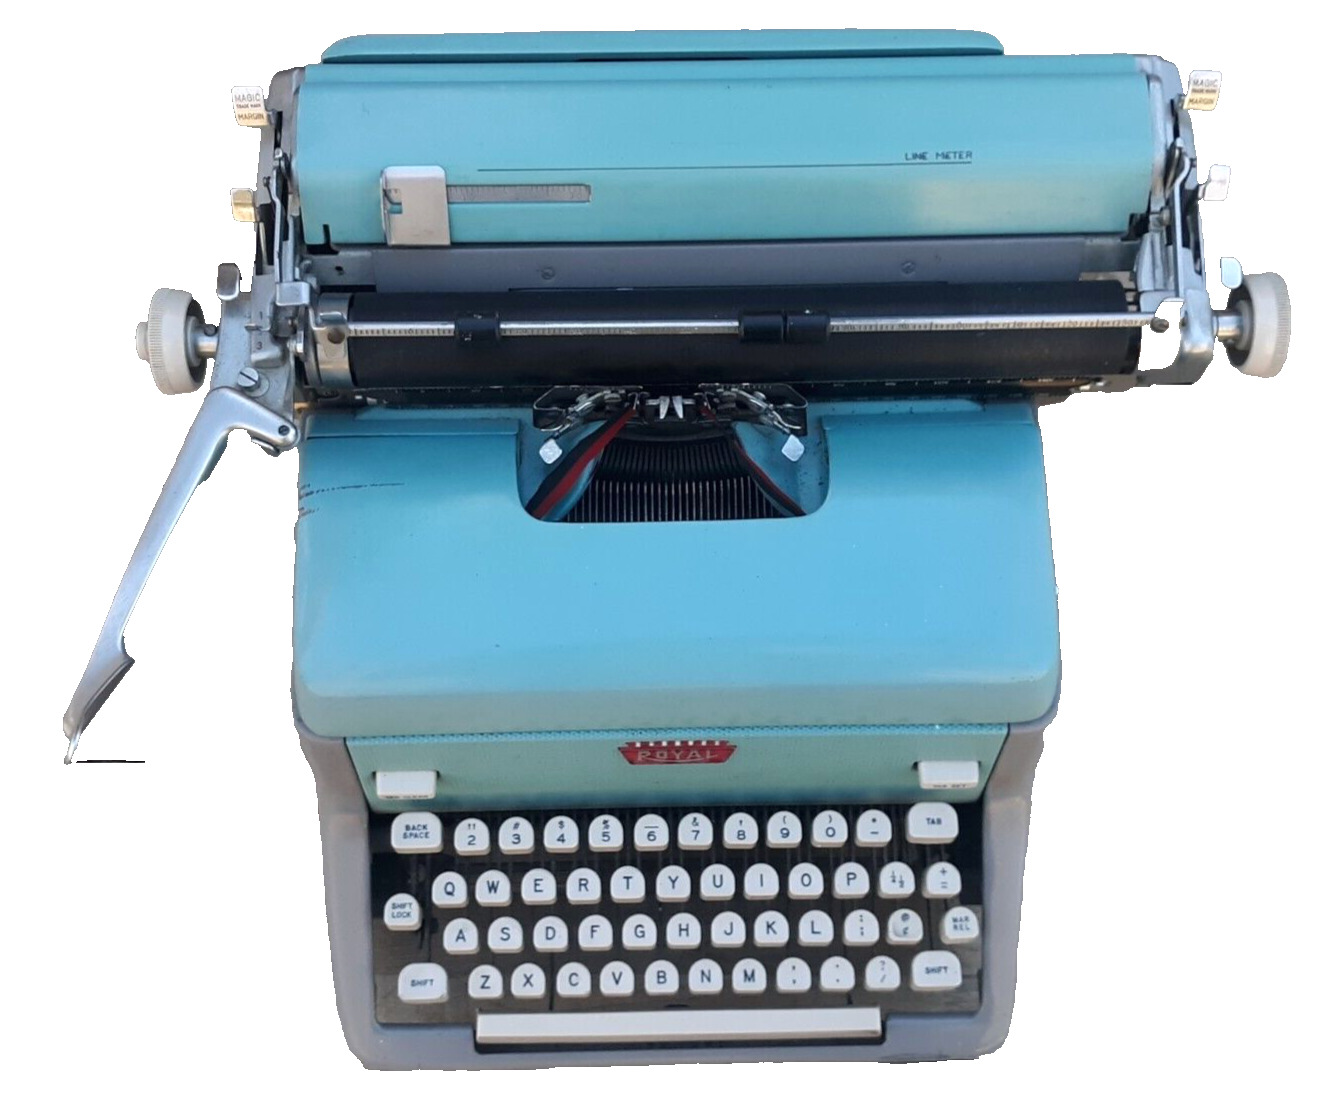 Vintage Royal Standard Portable Typewriter Turquoise/ Gray 1955 w/Magic Margin